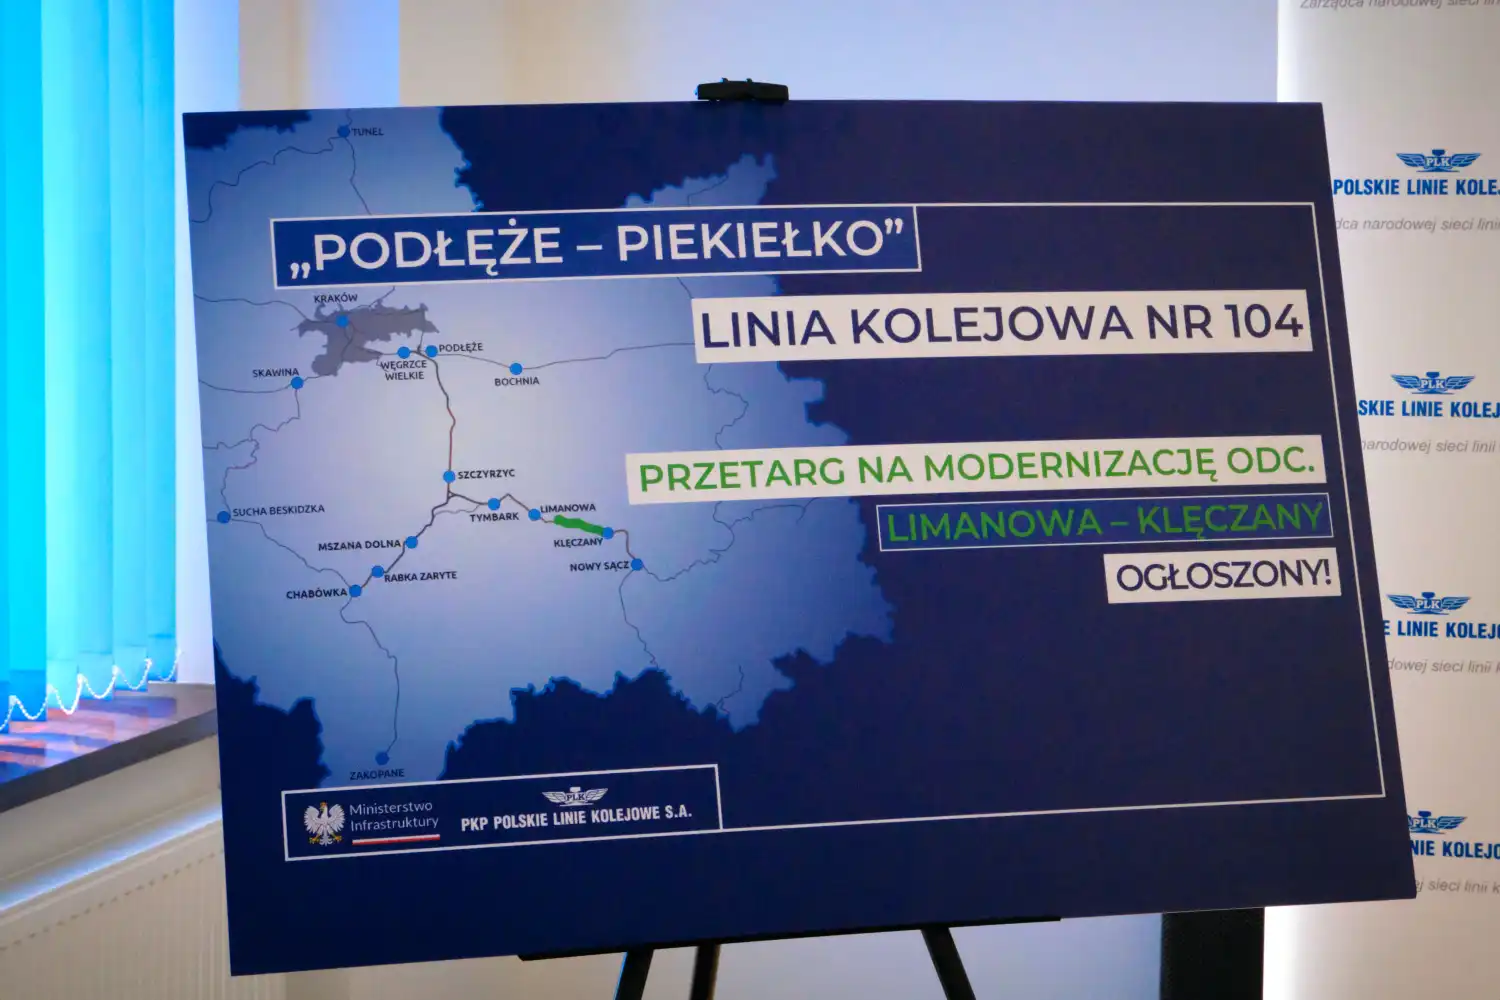 PKP Polskie Linie Kolejowe S.A. ogłaszają przetarg na modernizację kolejnego odcinka linii kolejowej nr 104 Chabówka-Nowy Sącz